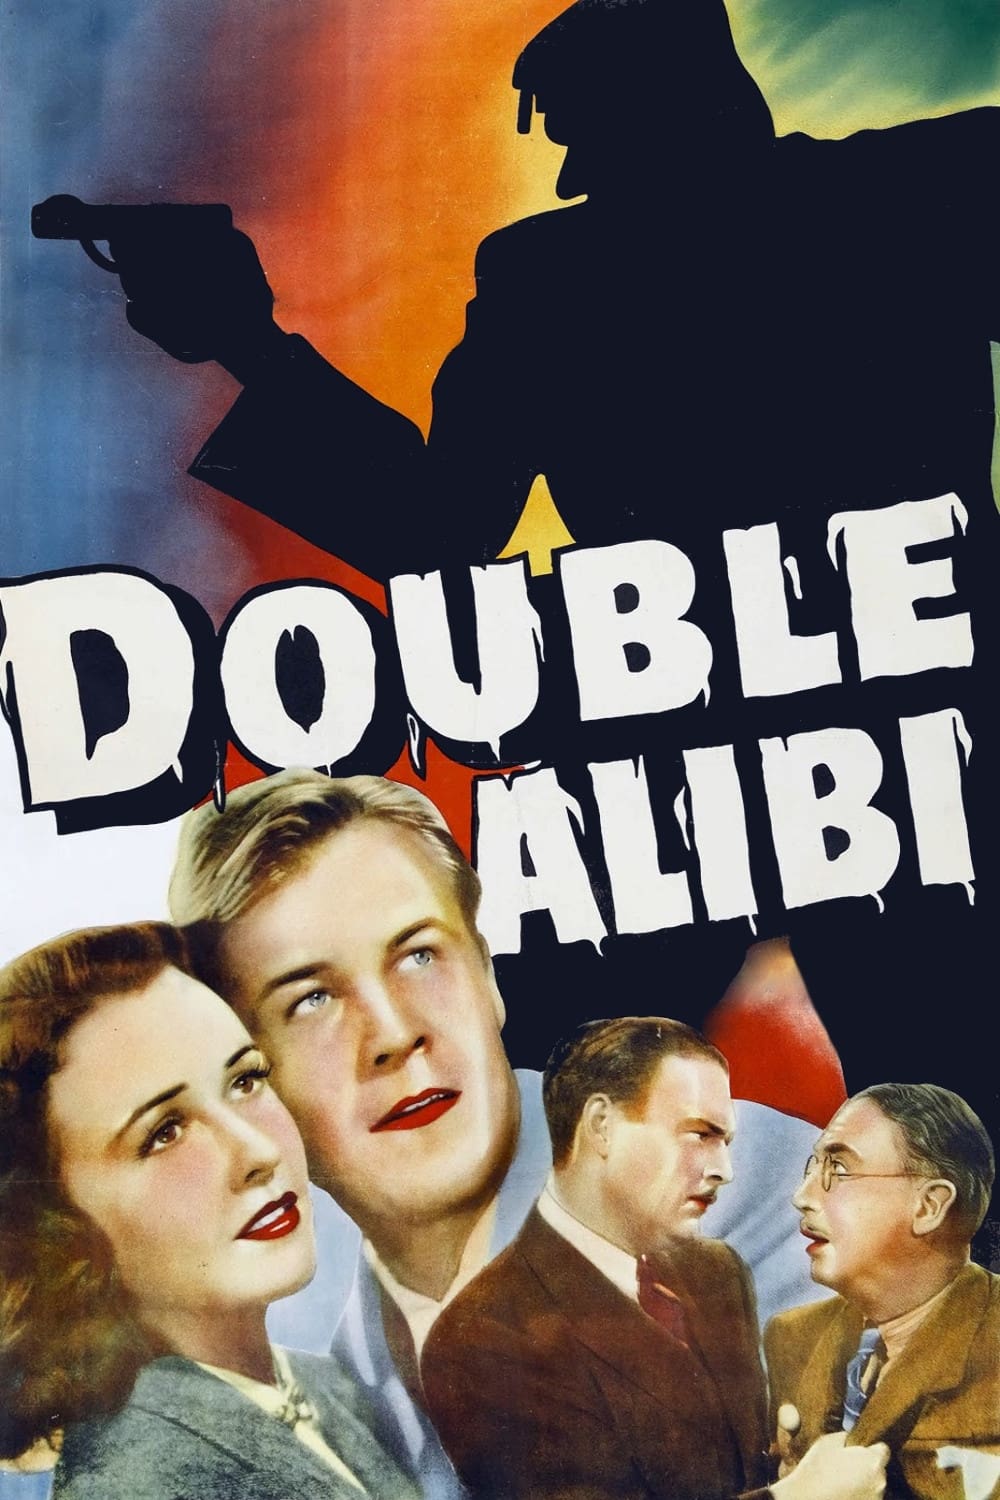 Double Alibi (1940)